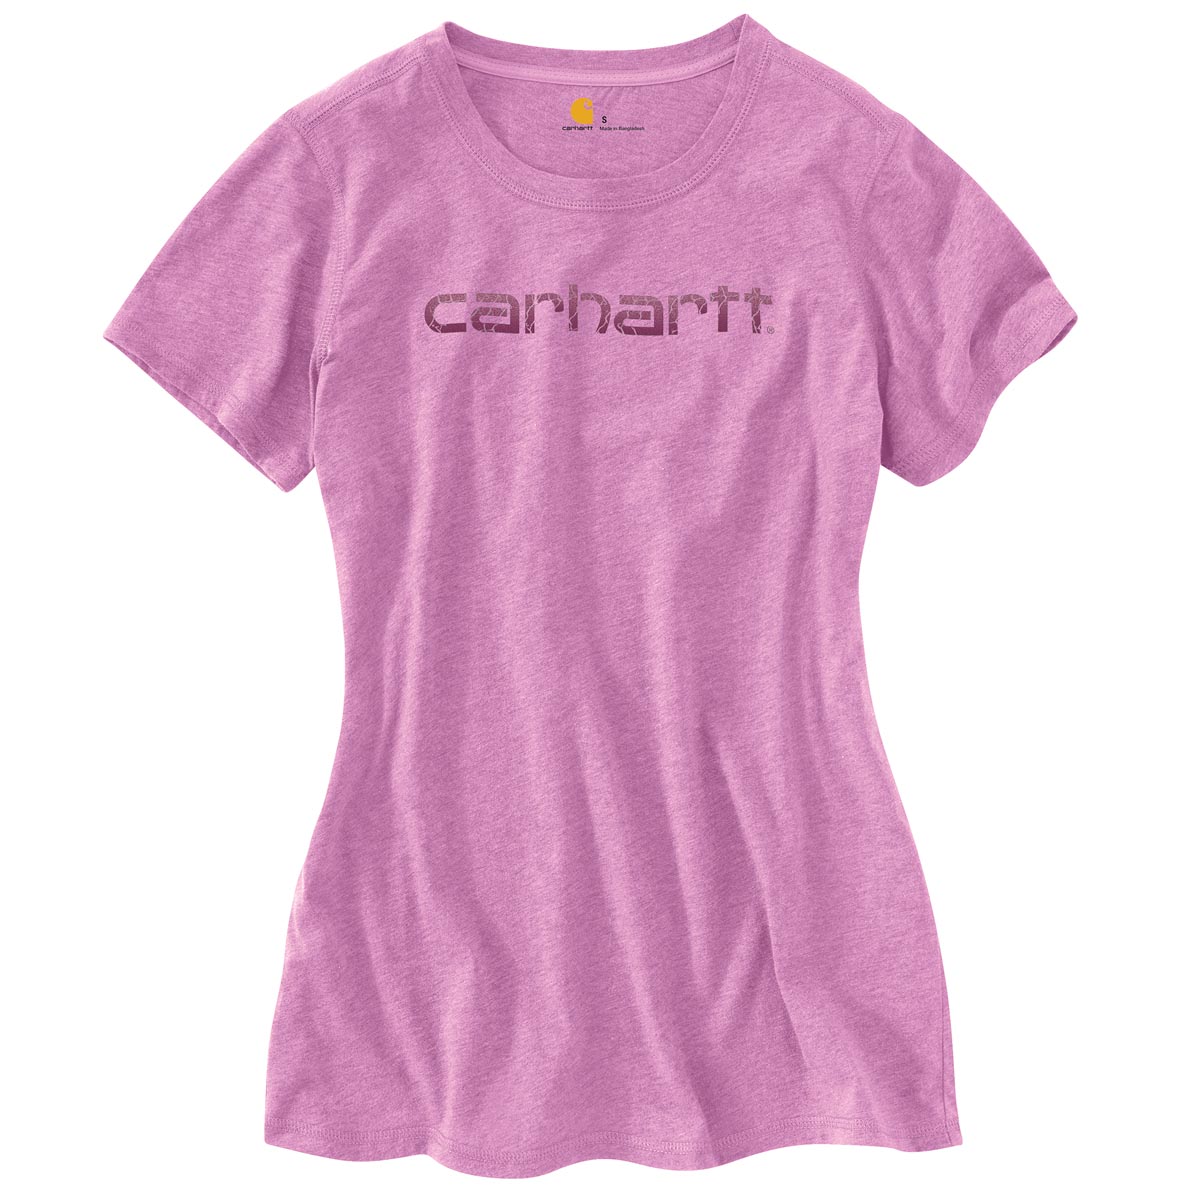 Carhartt Women's Short Sleeve Signature T Shirt